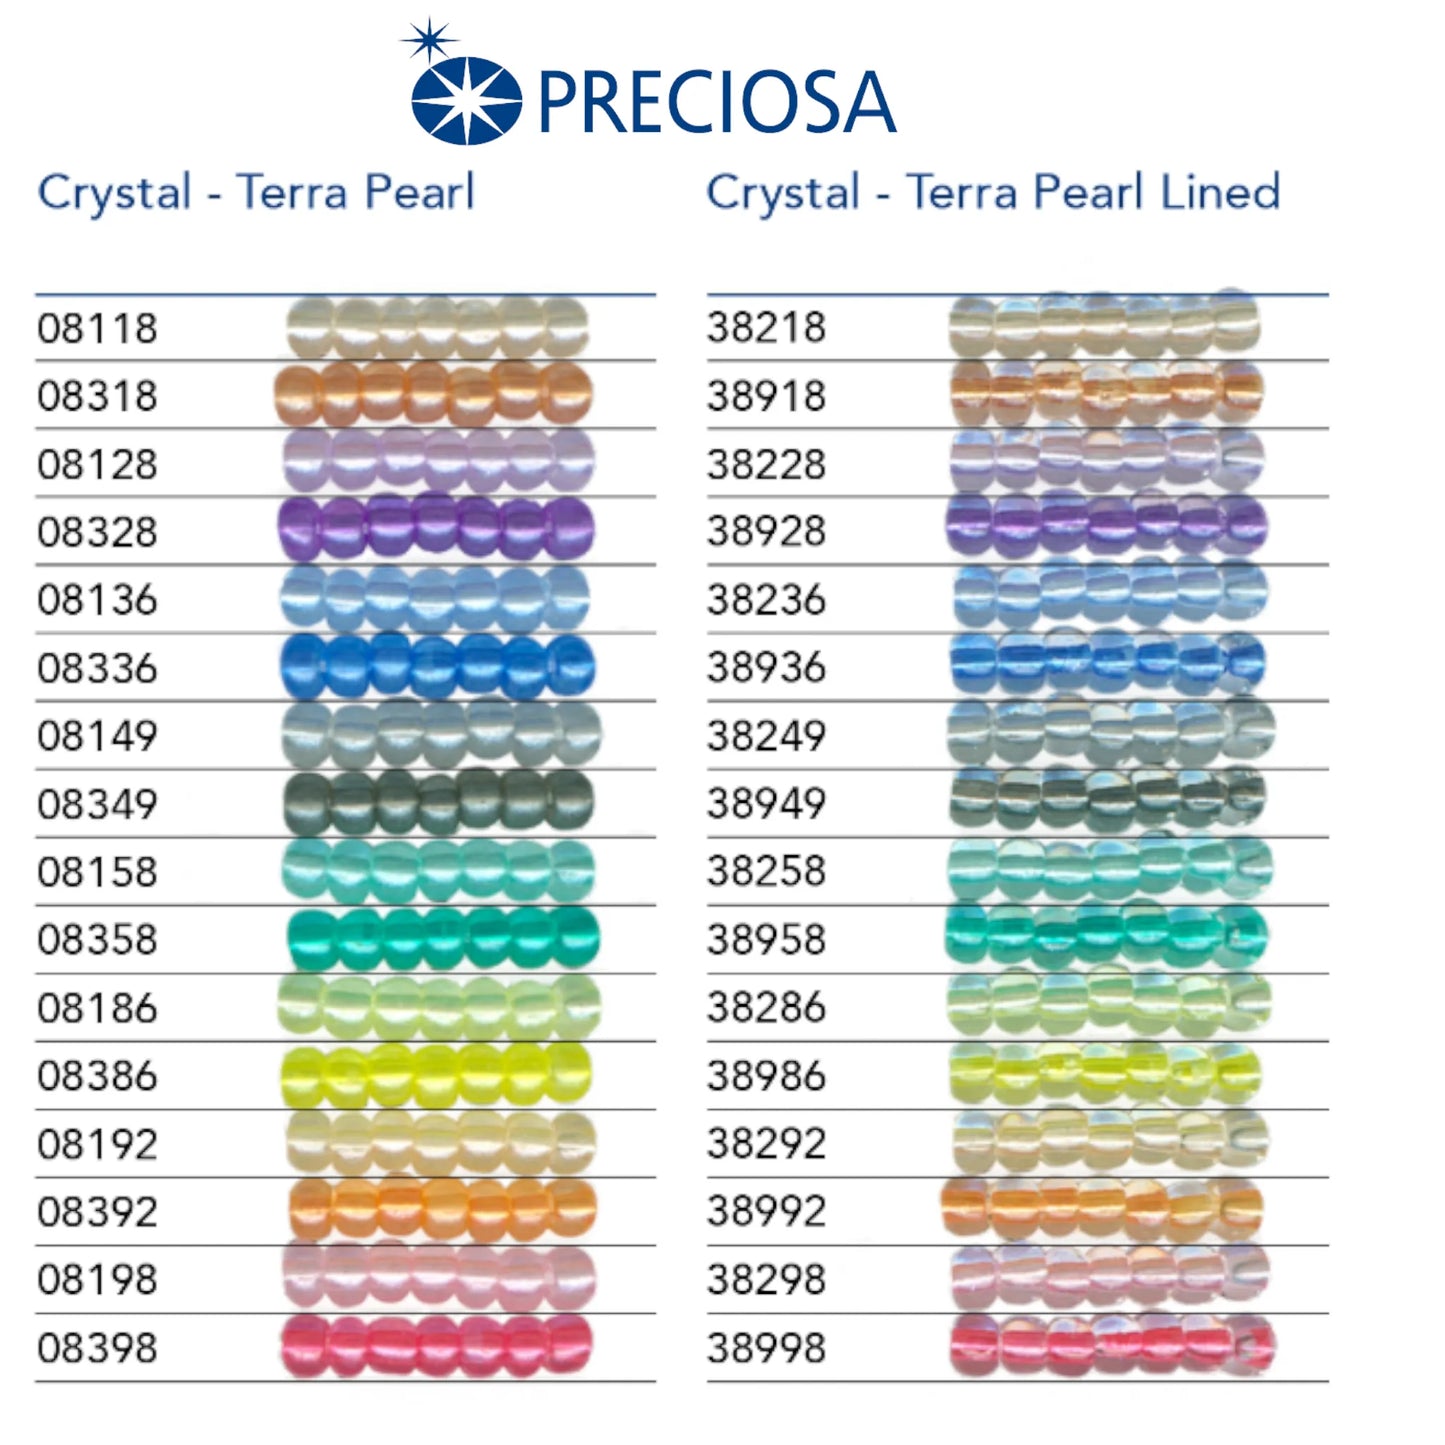 08336 Rocailles tchèques PRECIOSA Rocailles 10/0 bleu clair. Cristal - Terra Perle.